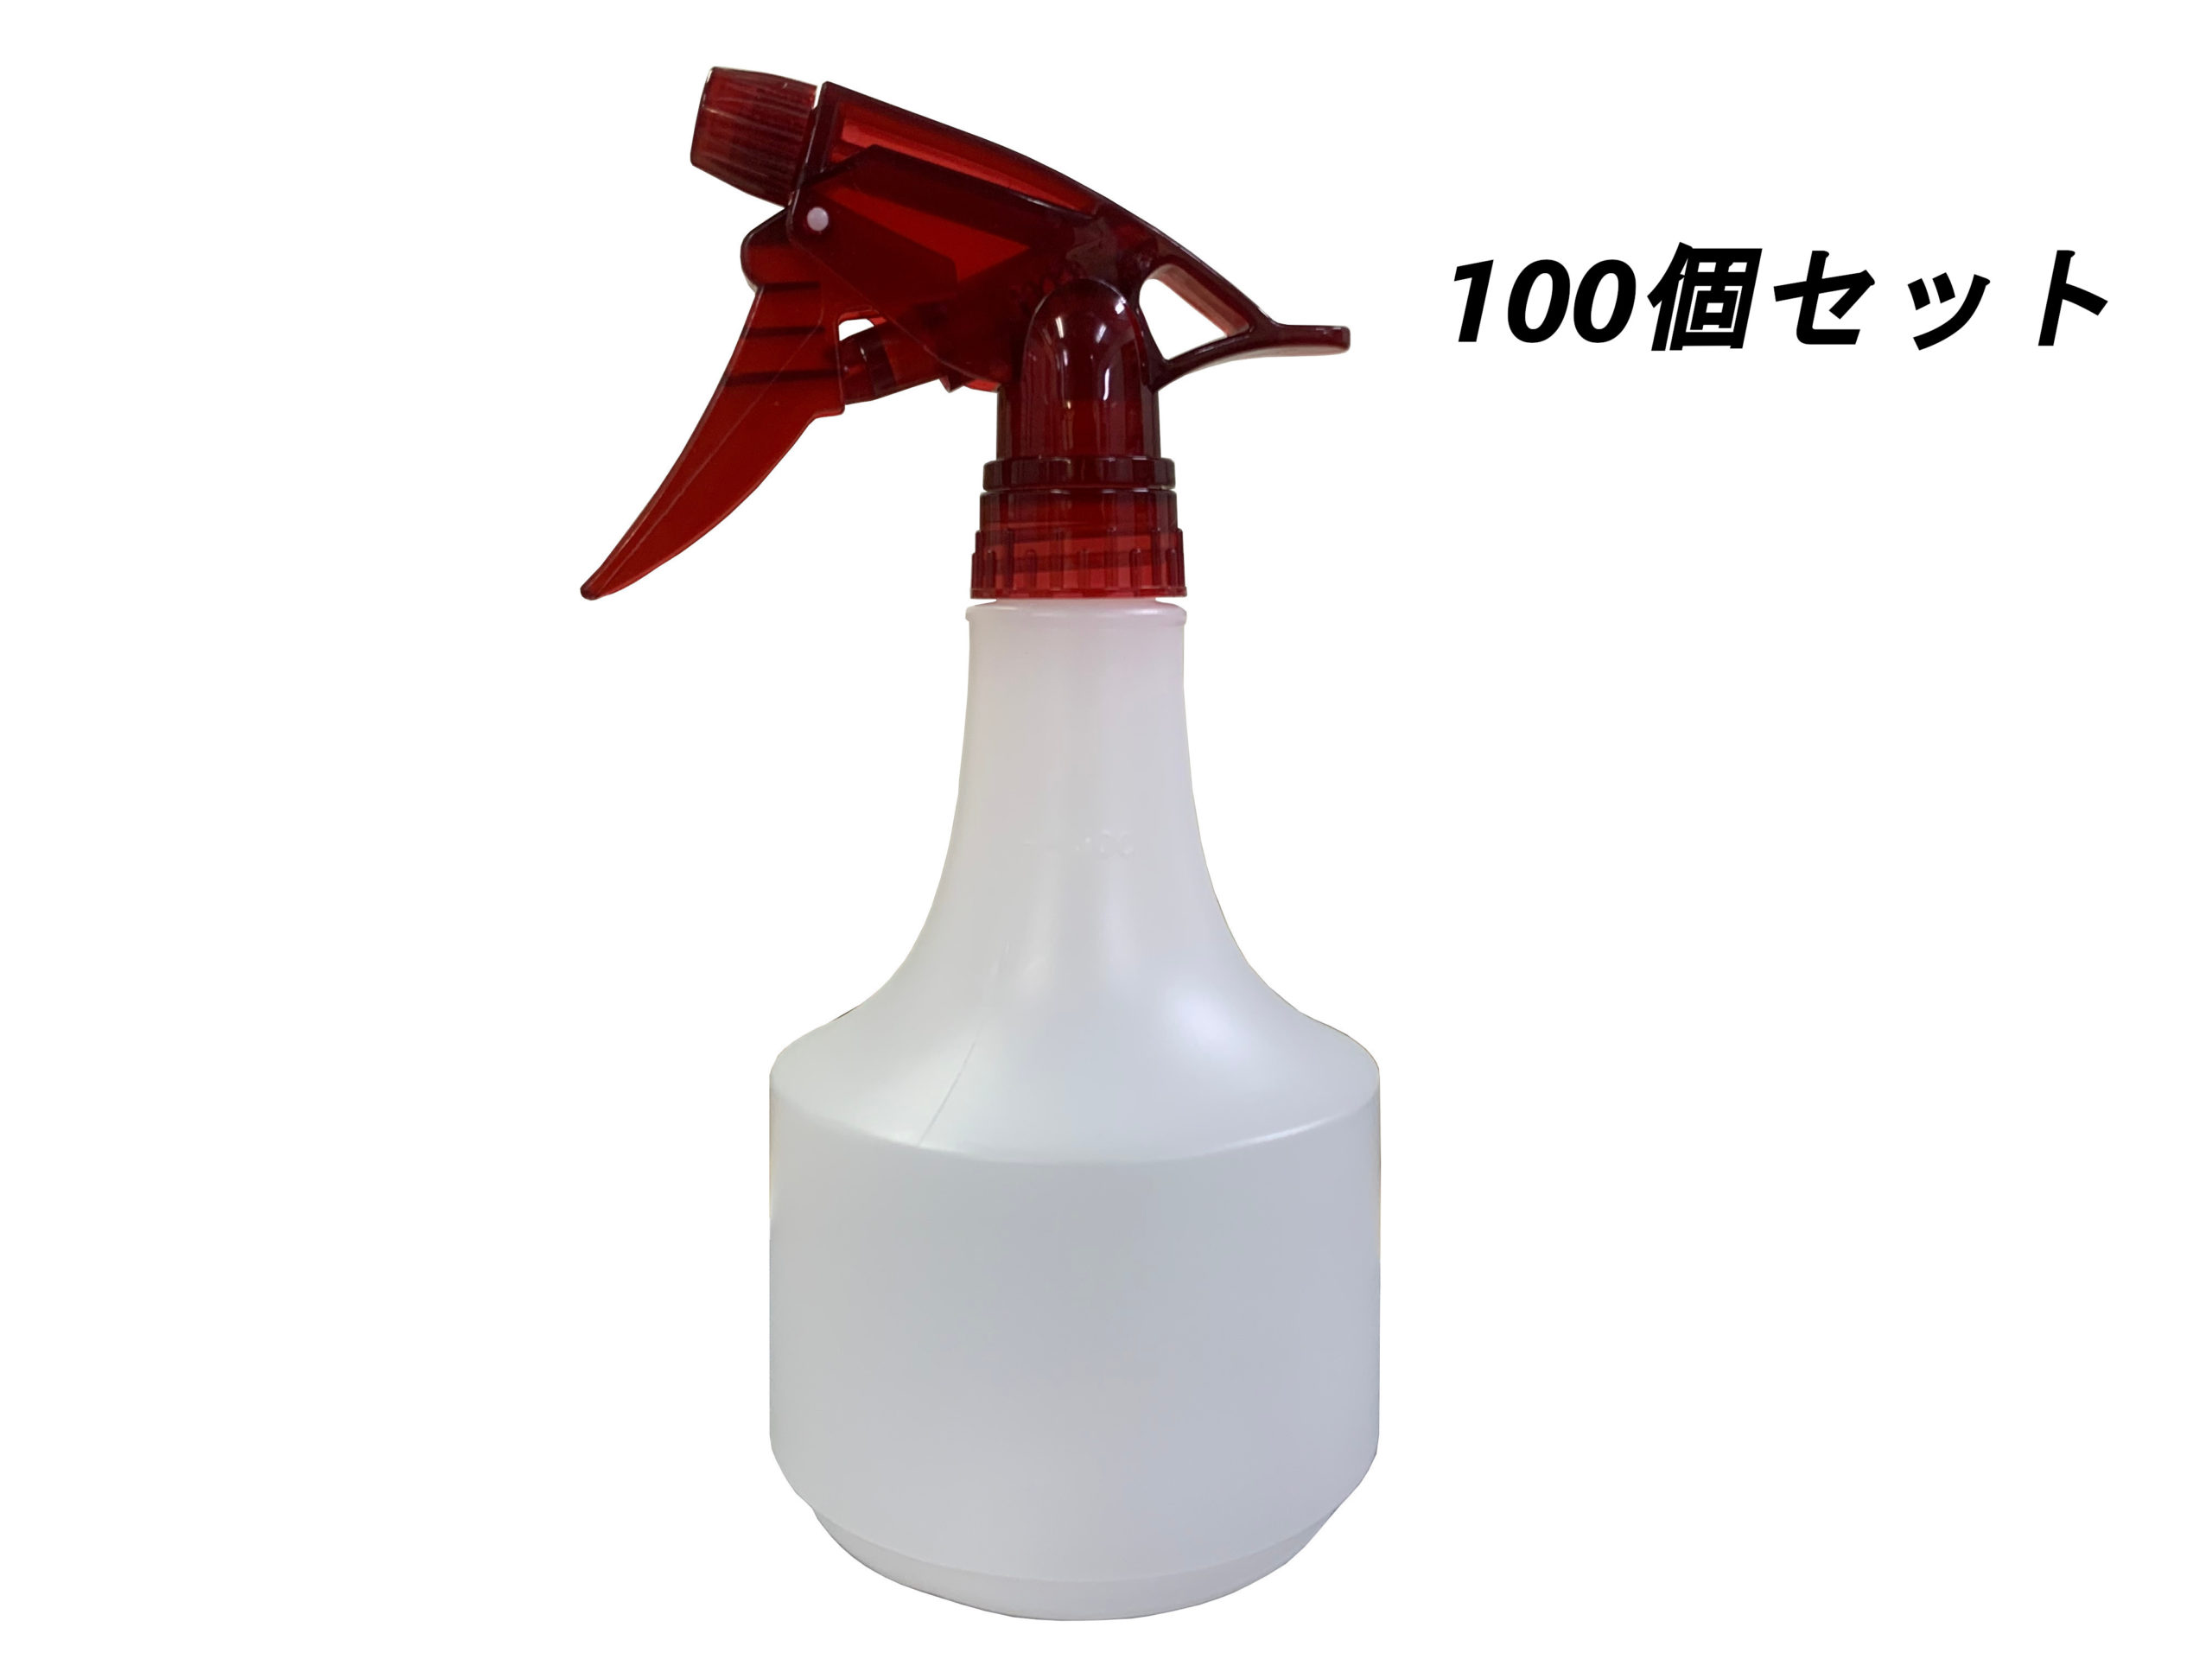 スプレーボトル500ml 霧吹きタイプ 詰め替え用ボトル 100個セット